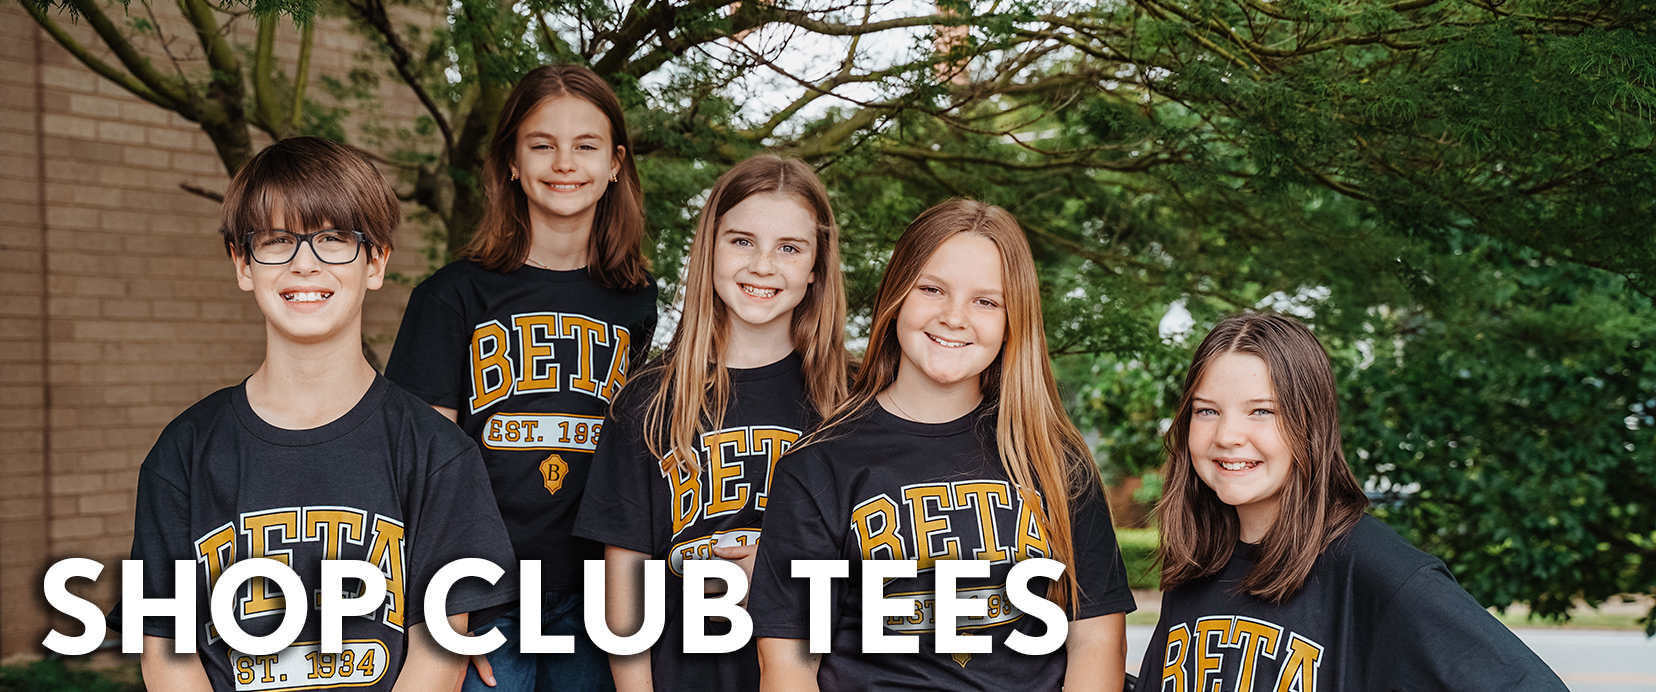 Beta Club Tees